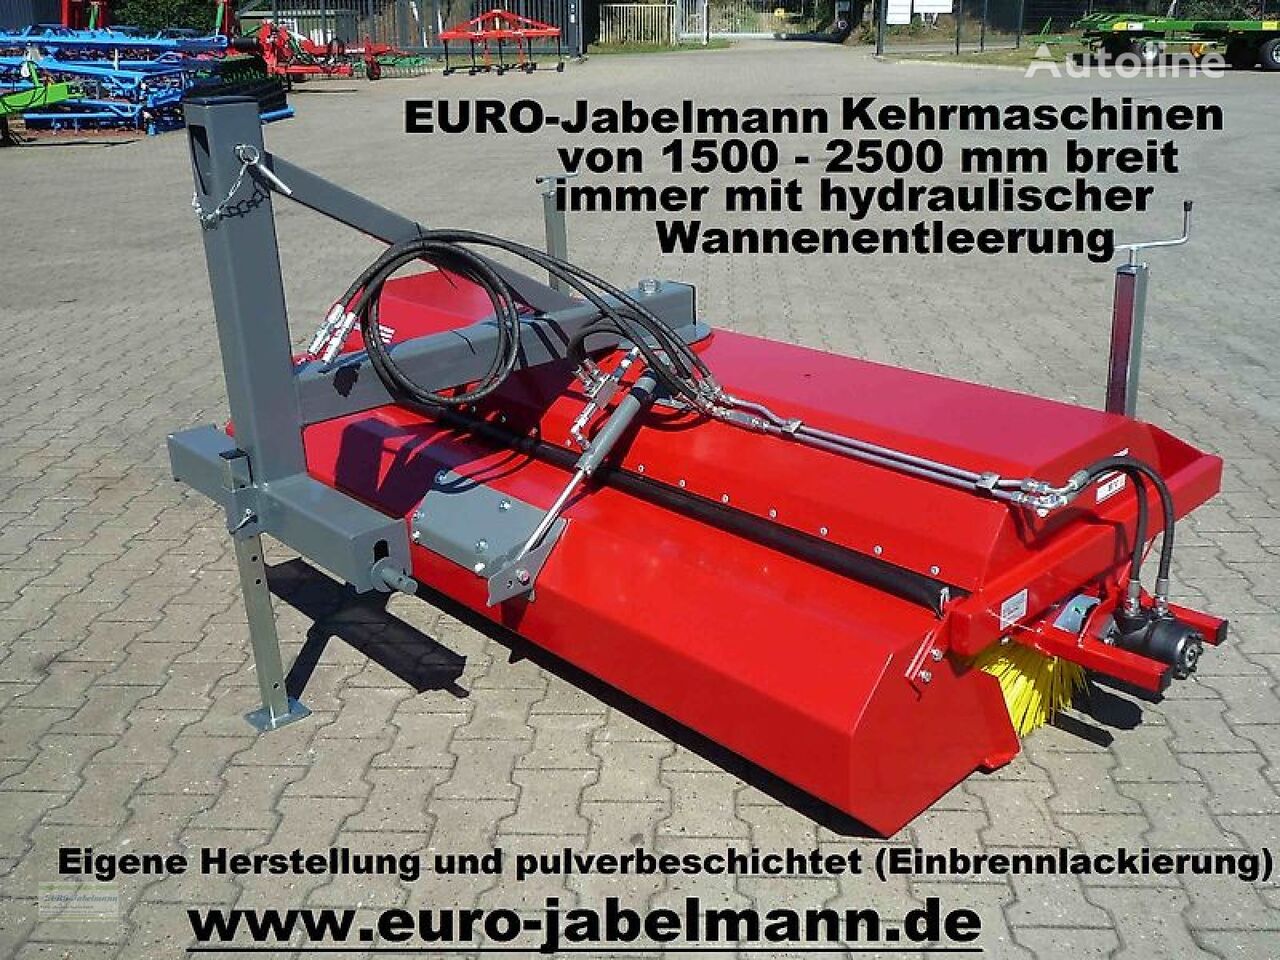 new Euro-Jabelmann Kehrmaschinen, NEU, Breiten 1500 - 2500 mm, eigene Herstellung, sweeper brush